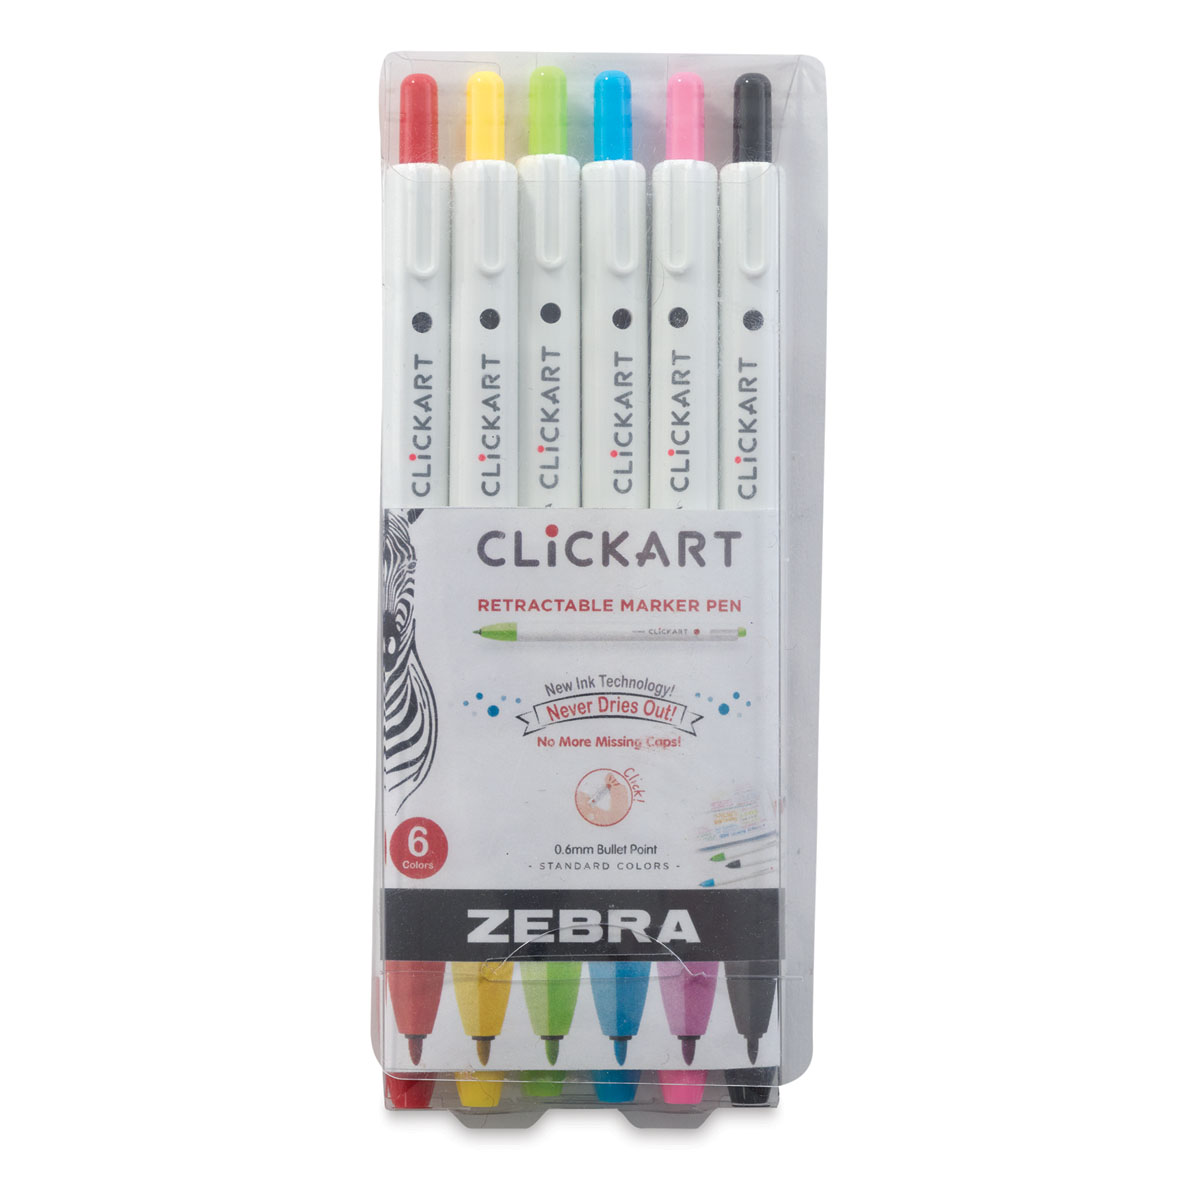 Zebra ClickArt Retractable Markers and Sets